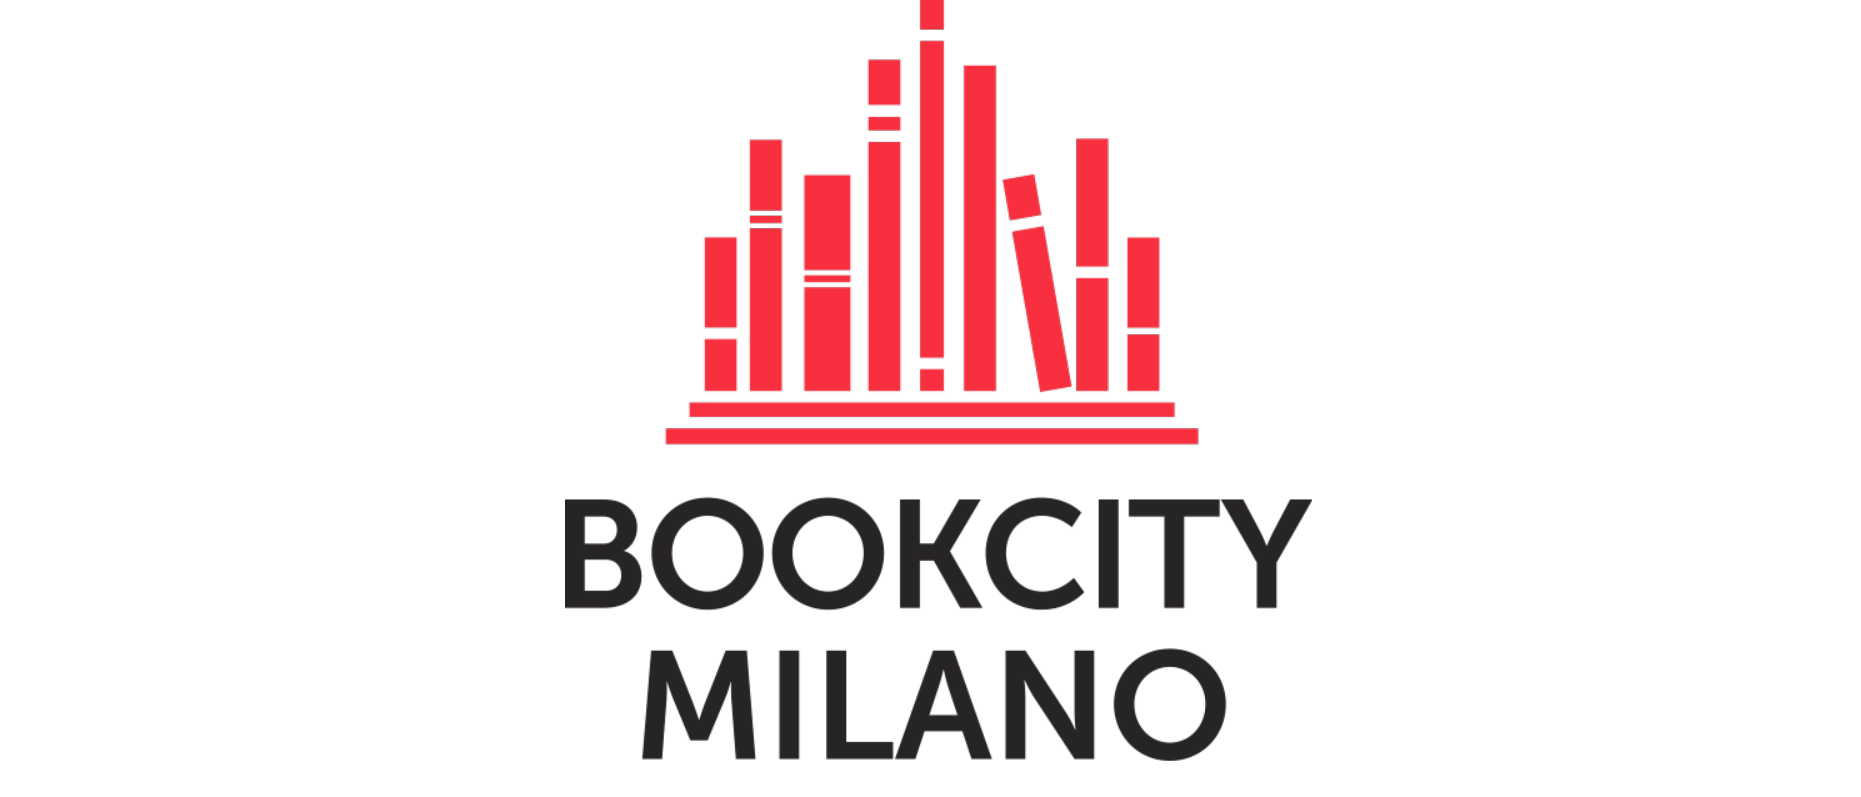 Bookcity Milano riparte in vista della decima edizione che si svolgerà dal 17 al 21 novembre 2021